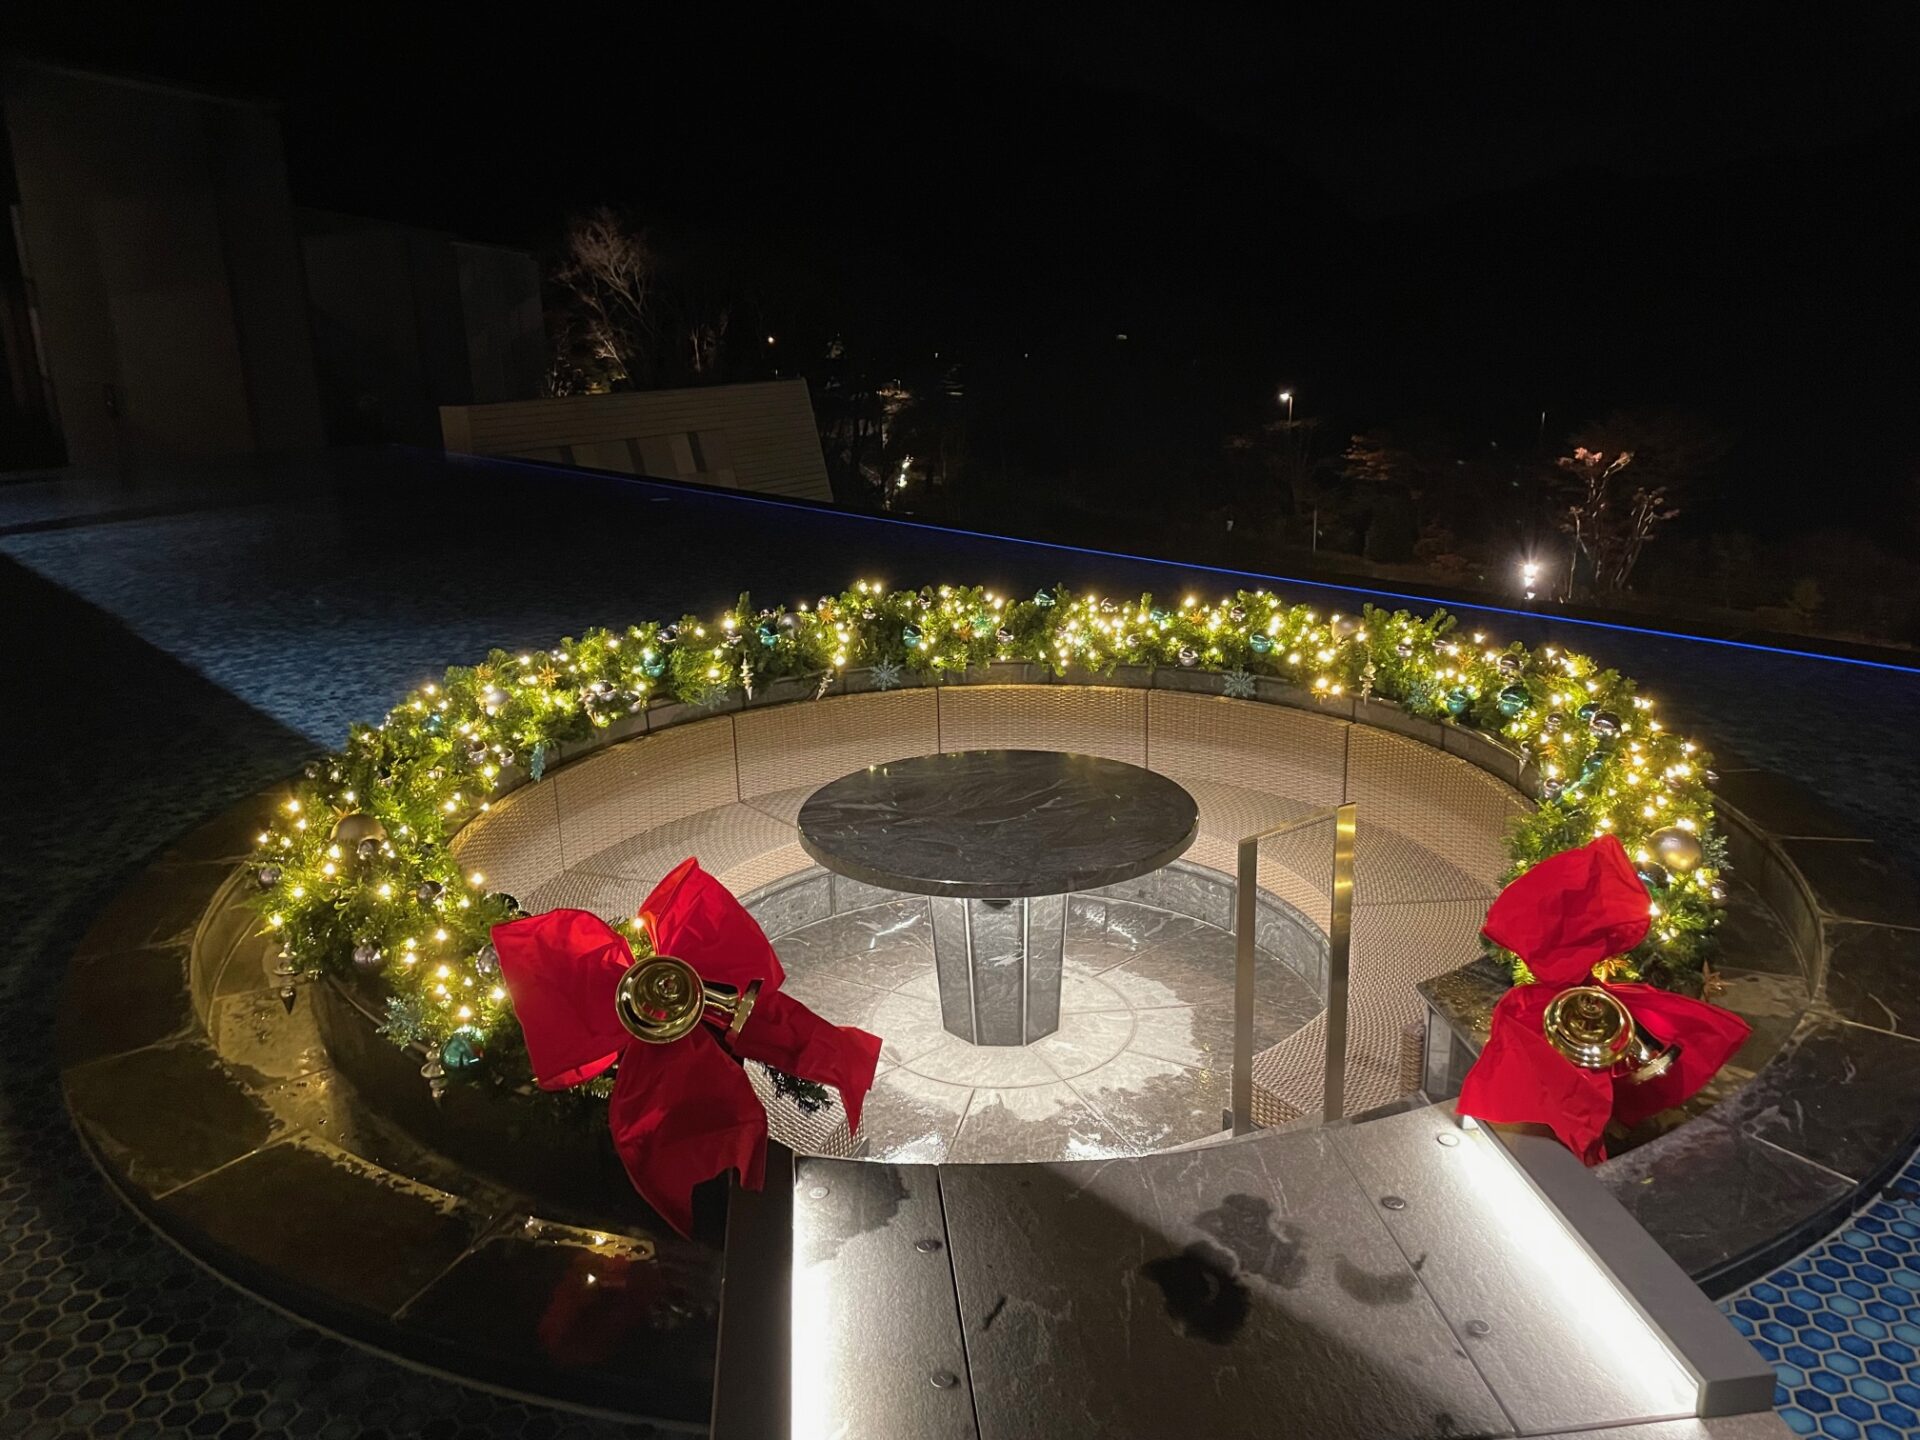 はなをりのクリスマス クリスマスリース ツリー 観光 イベント情報 箱根 芦ノ湖のホテル 旅館なら 箱根 芦ノ湖 はなをり 公式